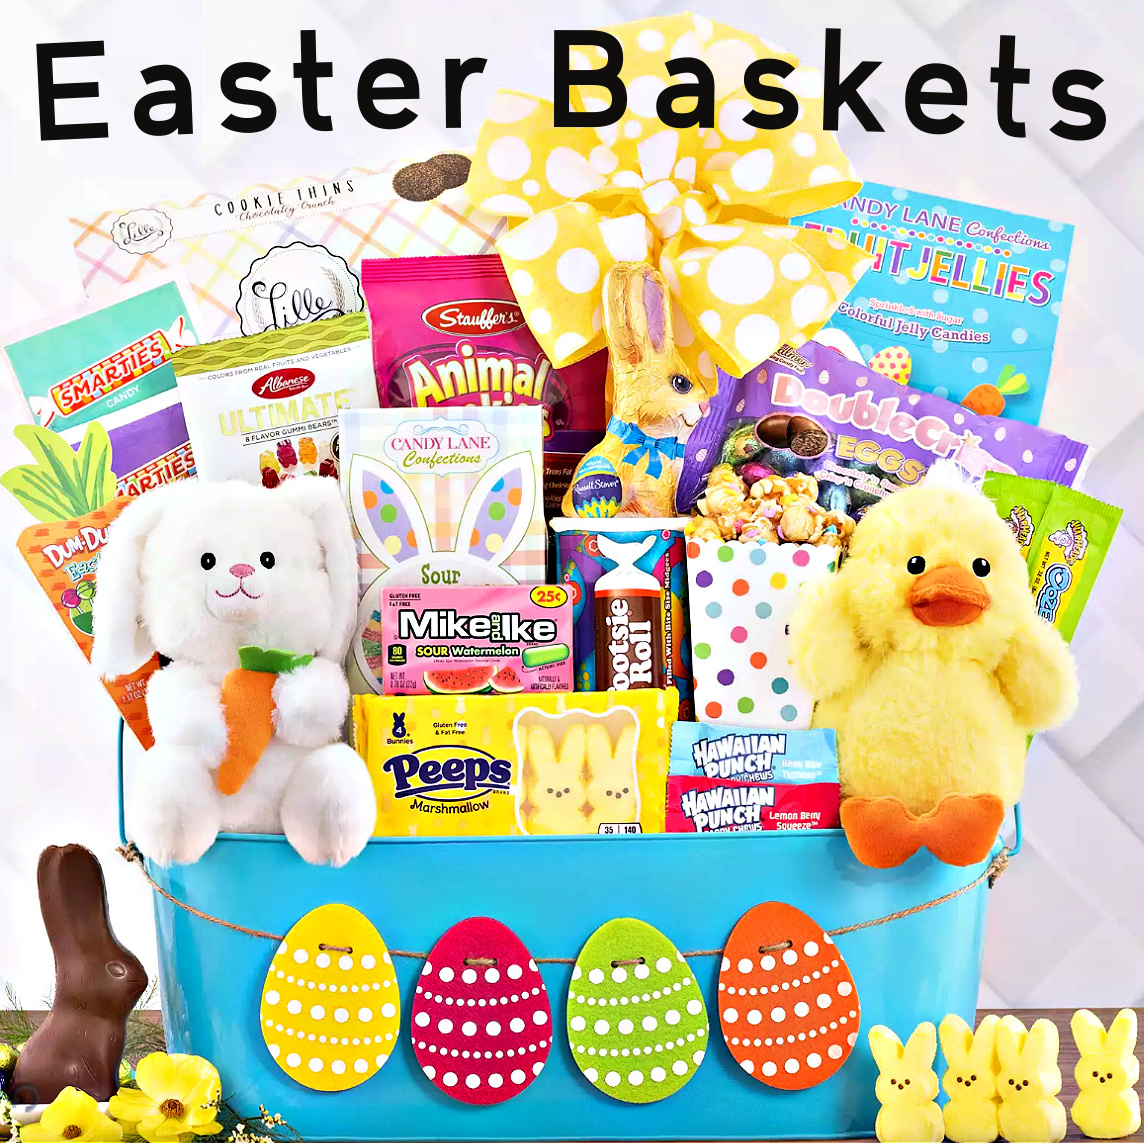 Best Easter Baskets Online